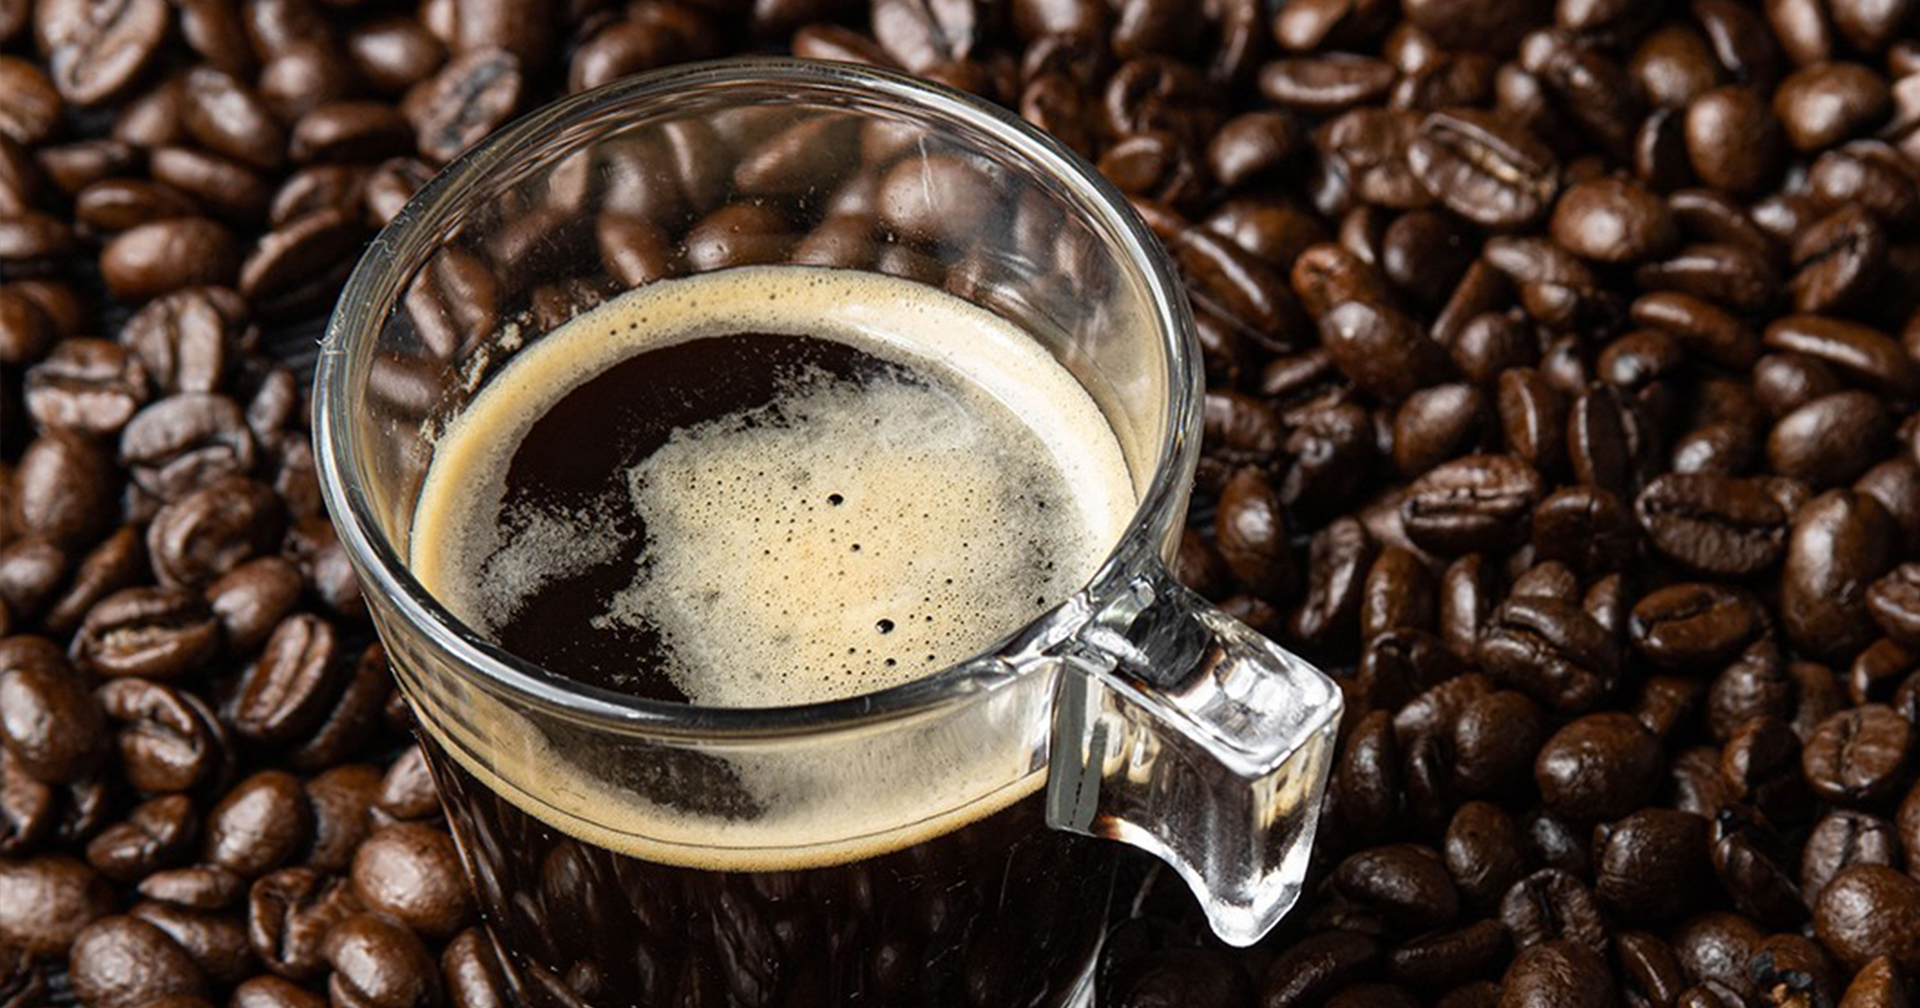 รู้หรือไม่ ดื่มกาแฟทุกวันลดความเสี่ยงเสียชีวิตได้ 35% เลยนะ